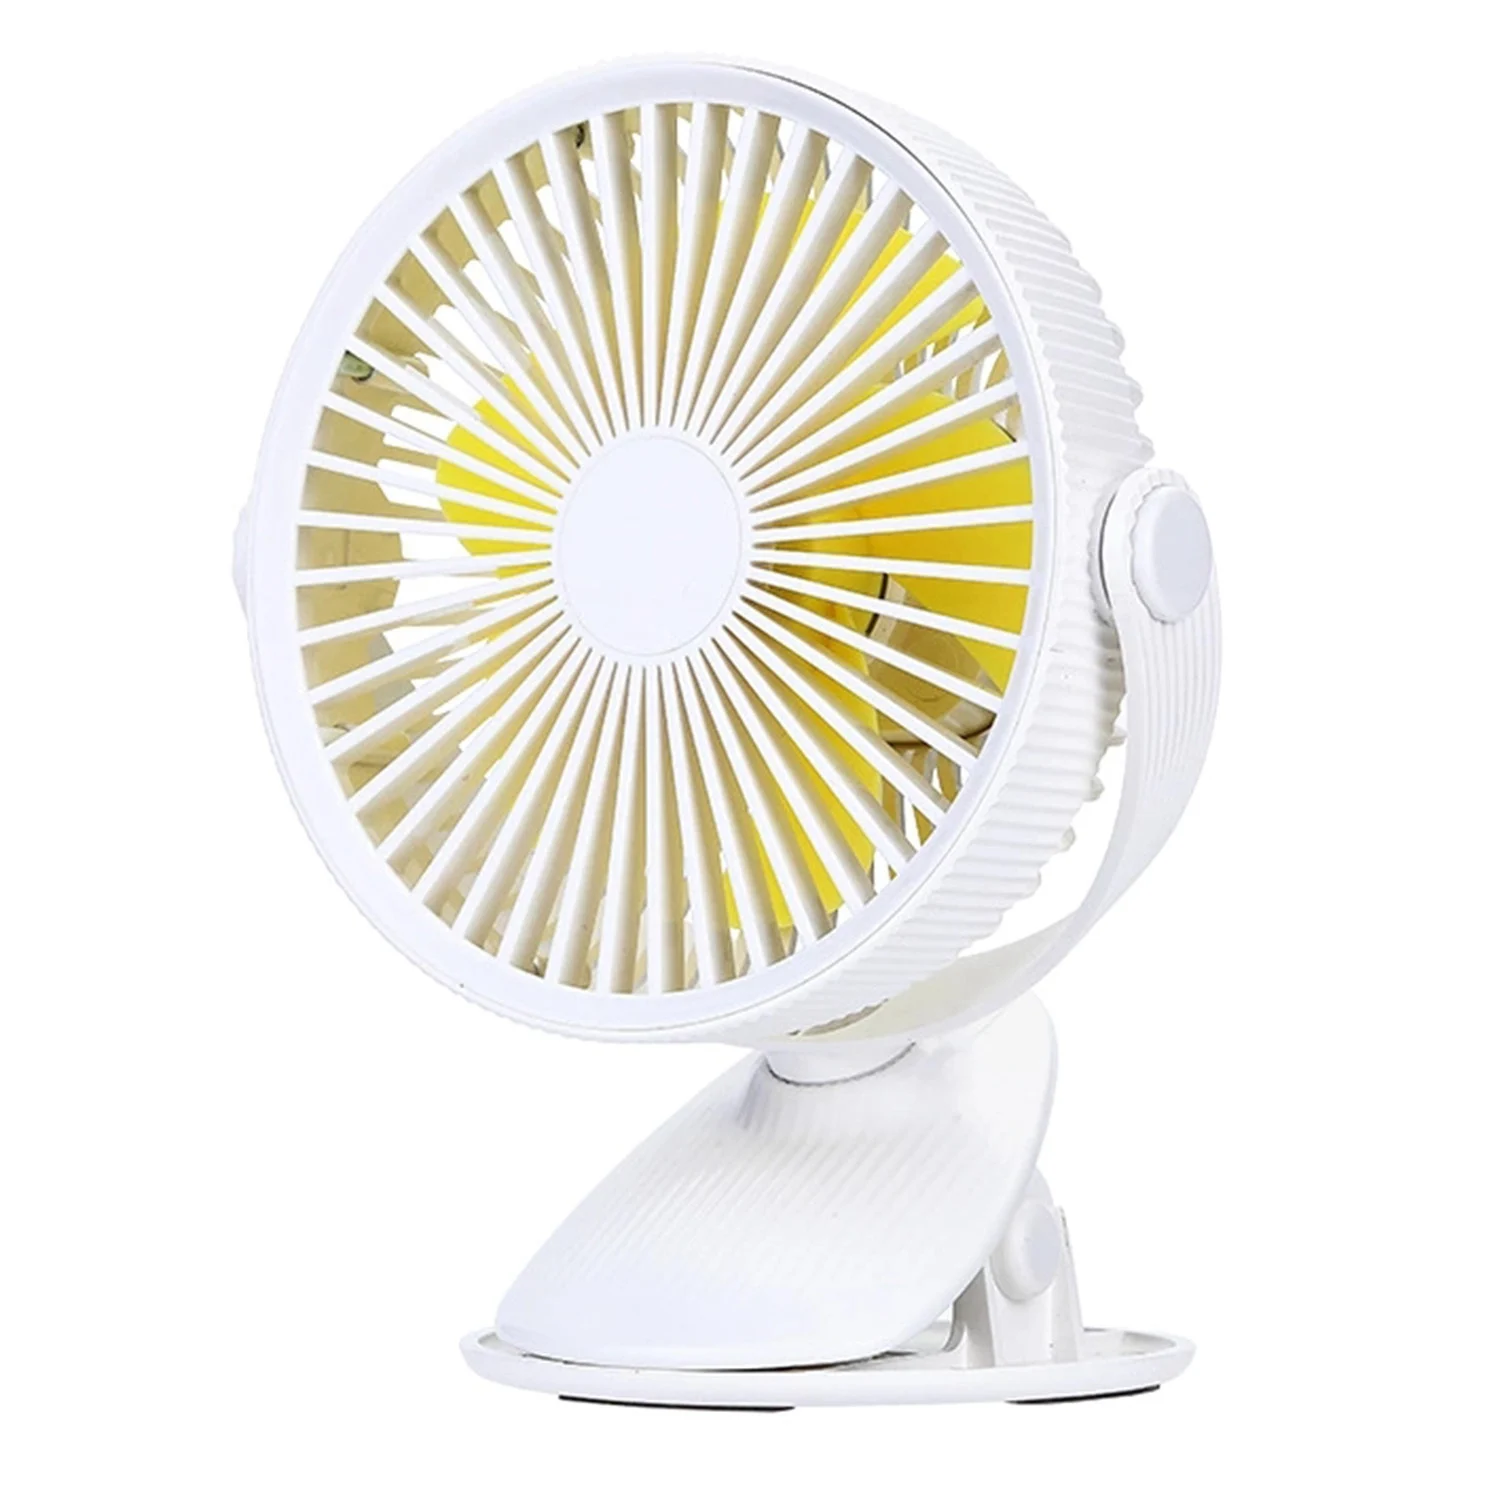 Мини Usb Перезаряжаемый вентилятор для воздушного охлаждения, настольный вентилятор с зажимом, двойной вентилятор для дома, студенческого общежития, прикроватный портативный Настольный вентилятор